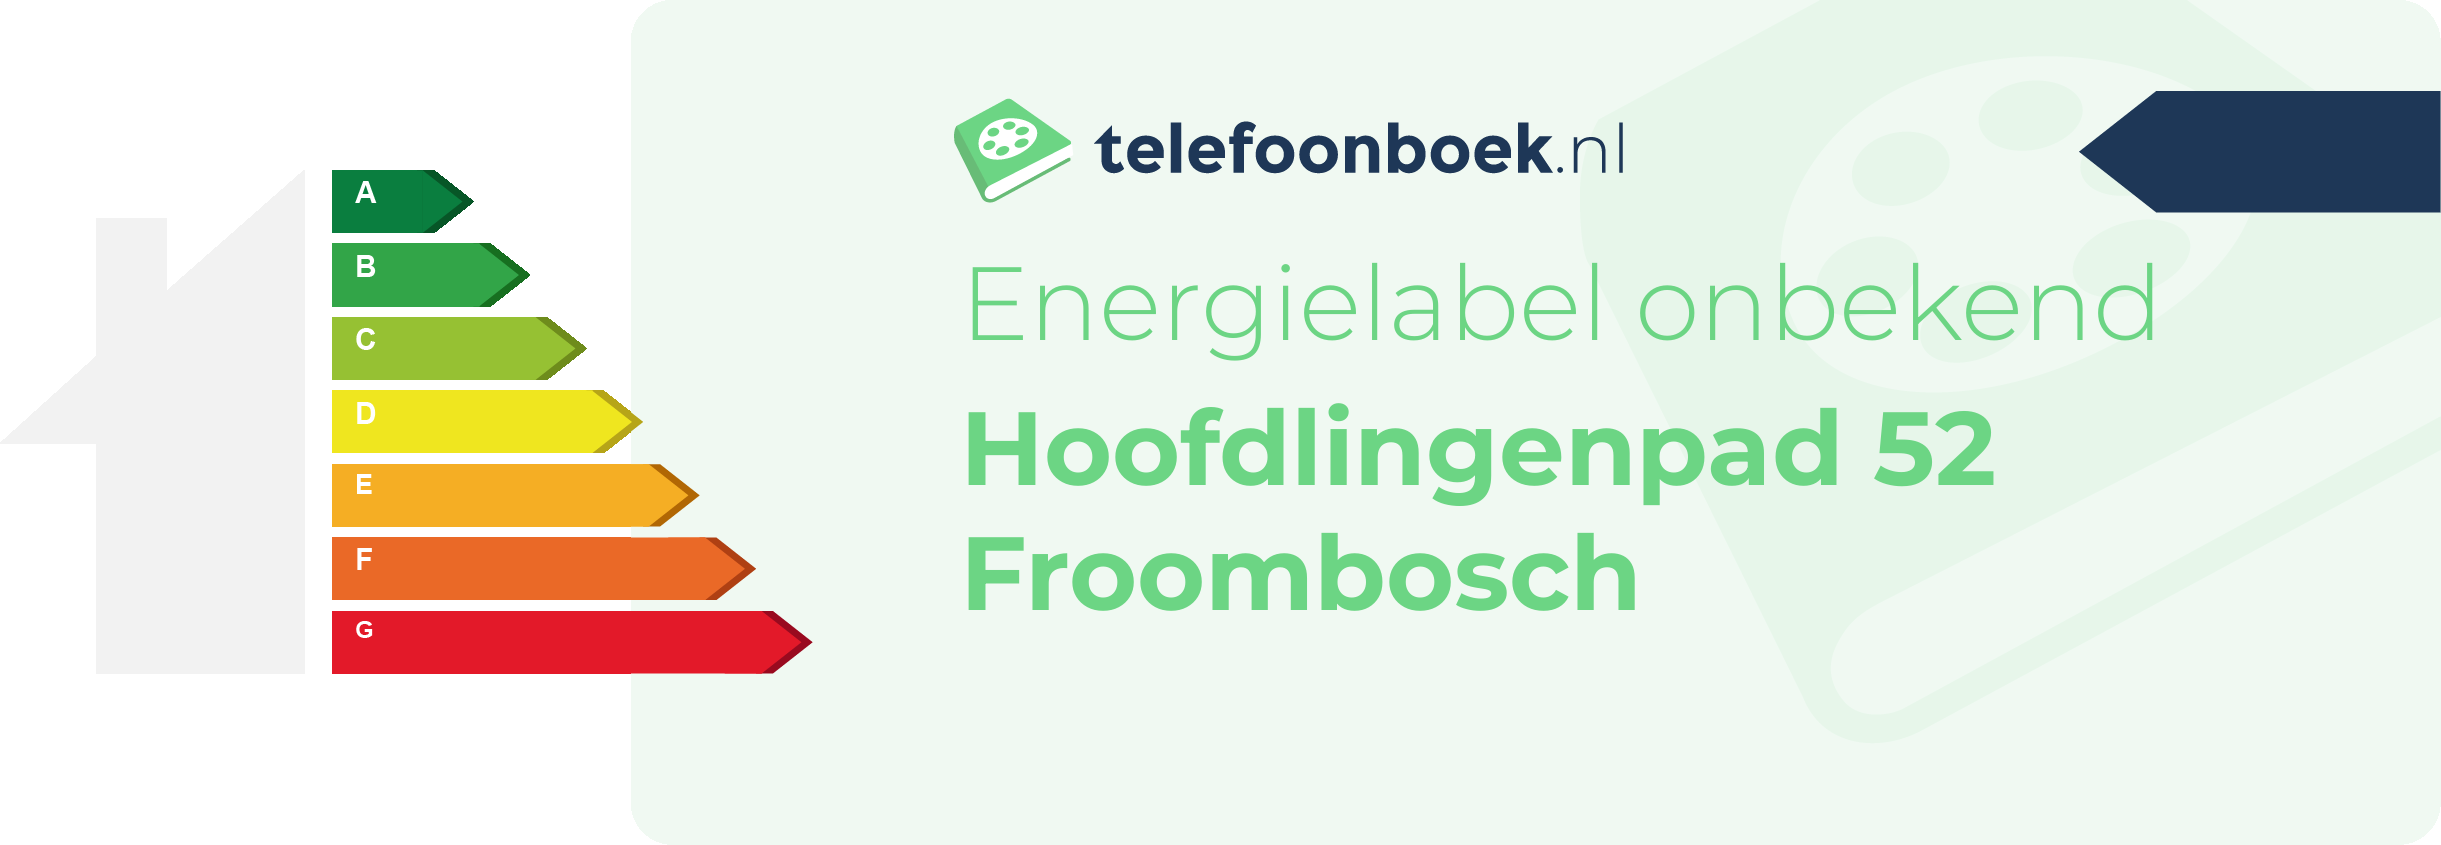 Energielabel Hoofdlingenpad 52 Froombosch